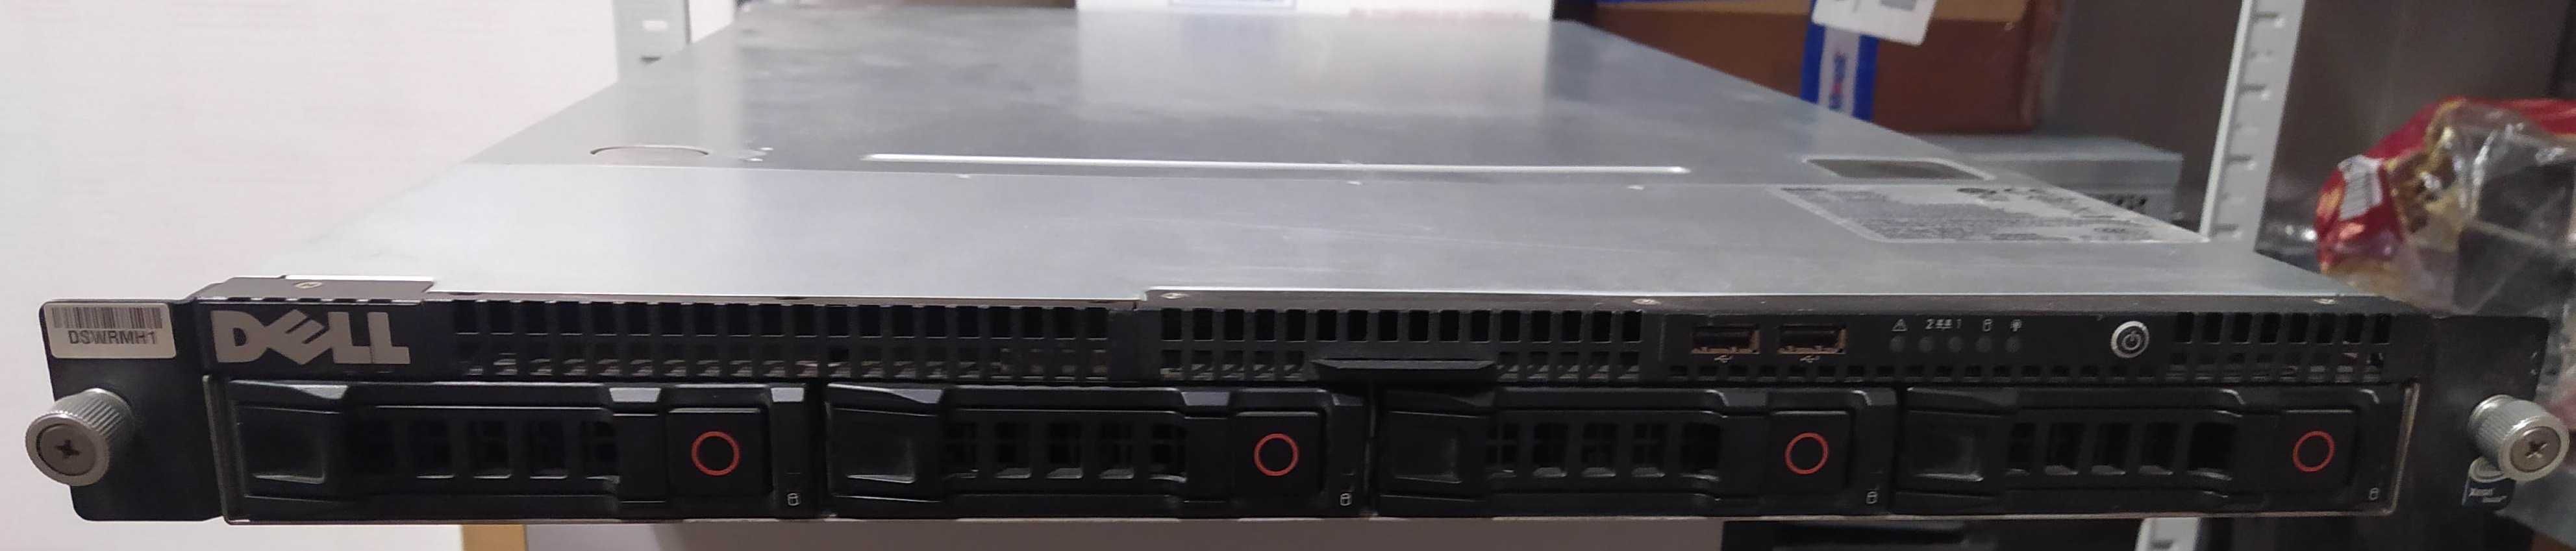 Сервер Dell CS24-SC 16Gb RAM 2х Xeon L5420 8 ядер БЖ 400Вт 4xSATA 3.5"